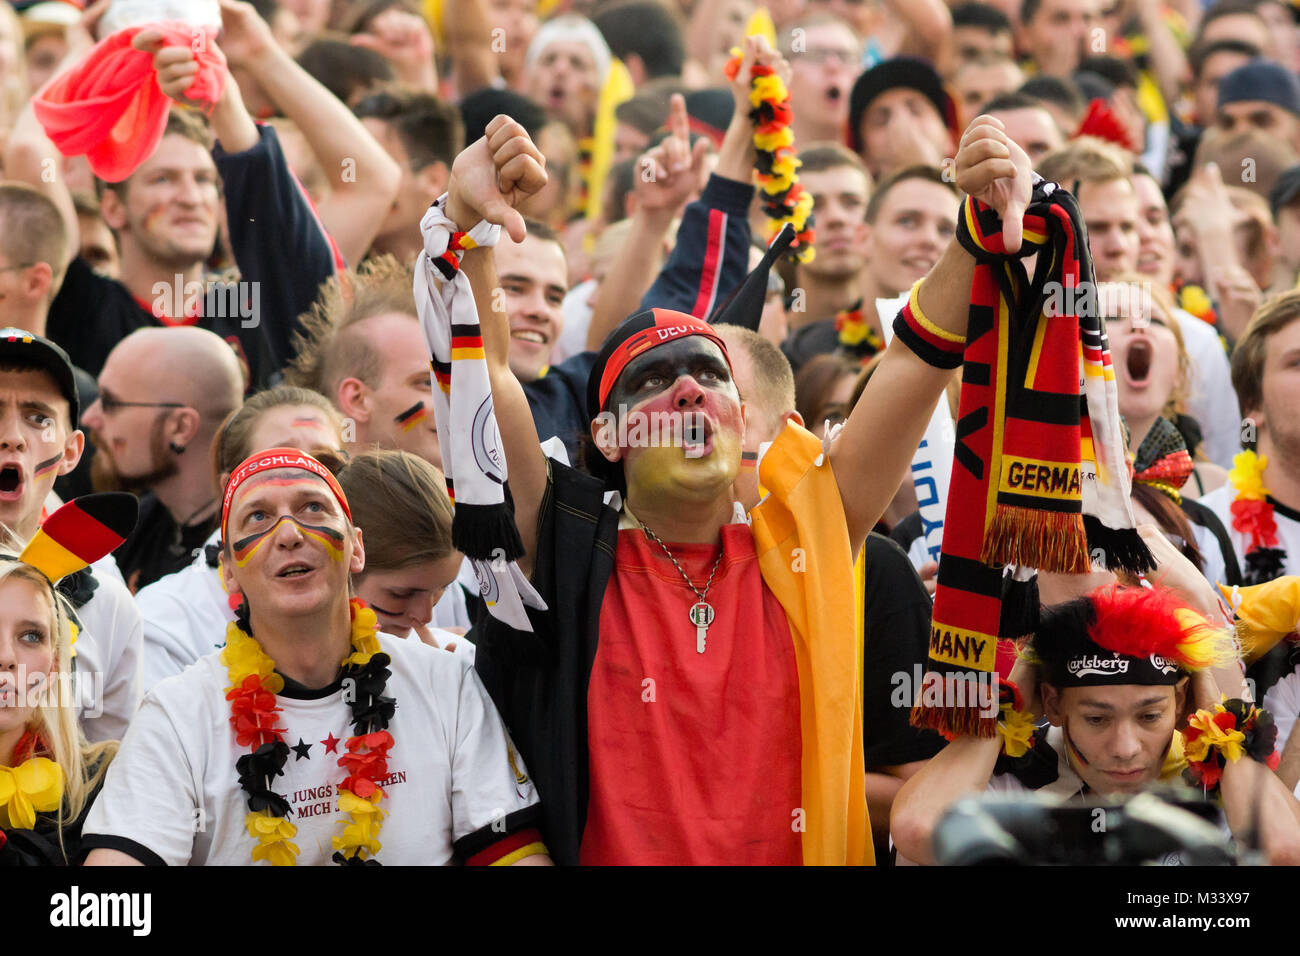 Menschenmassen verfolgen auf der riesigen Leinwand und freuen sich auf derFanmeile zur Europameisterschaft 2012 Deutschland gegen Griechenland am Brandenburger Tor en Berlín. Foto de stock